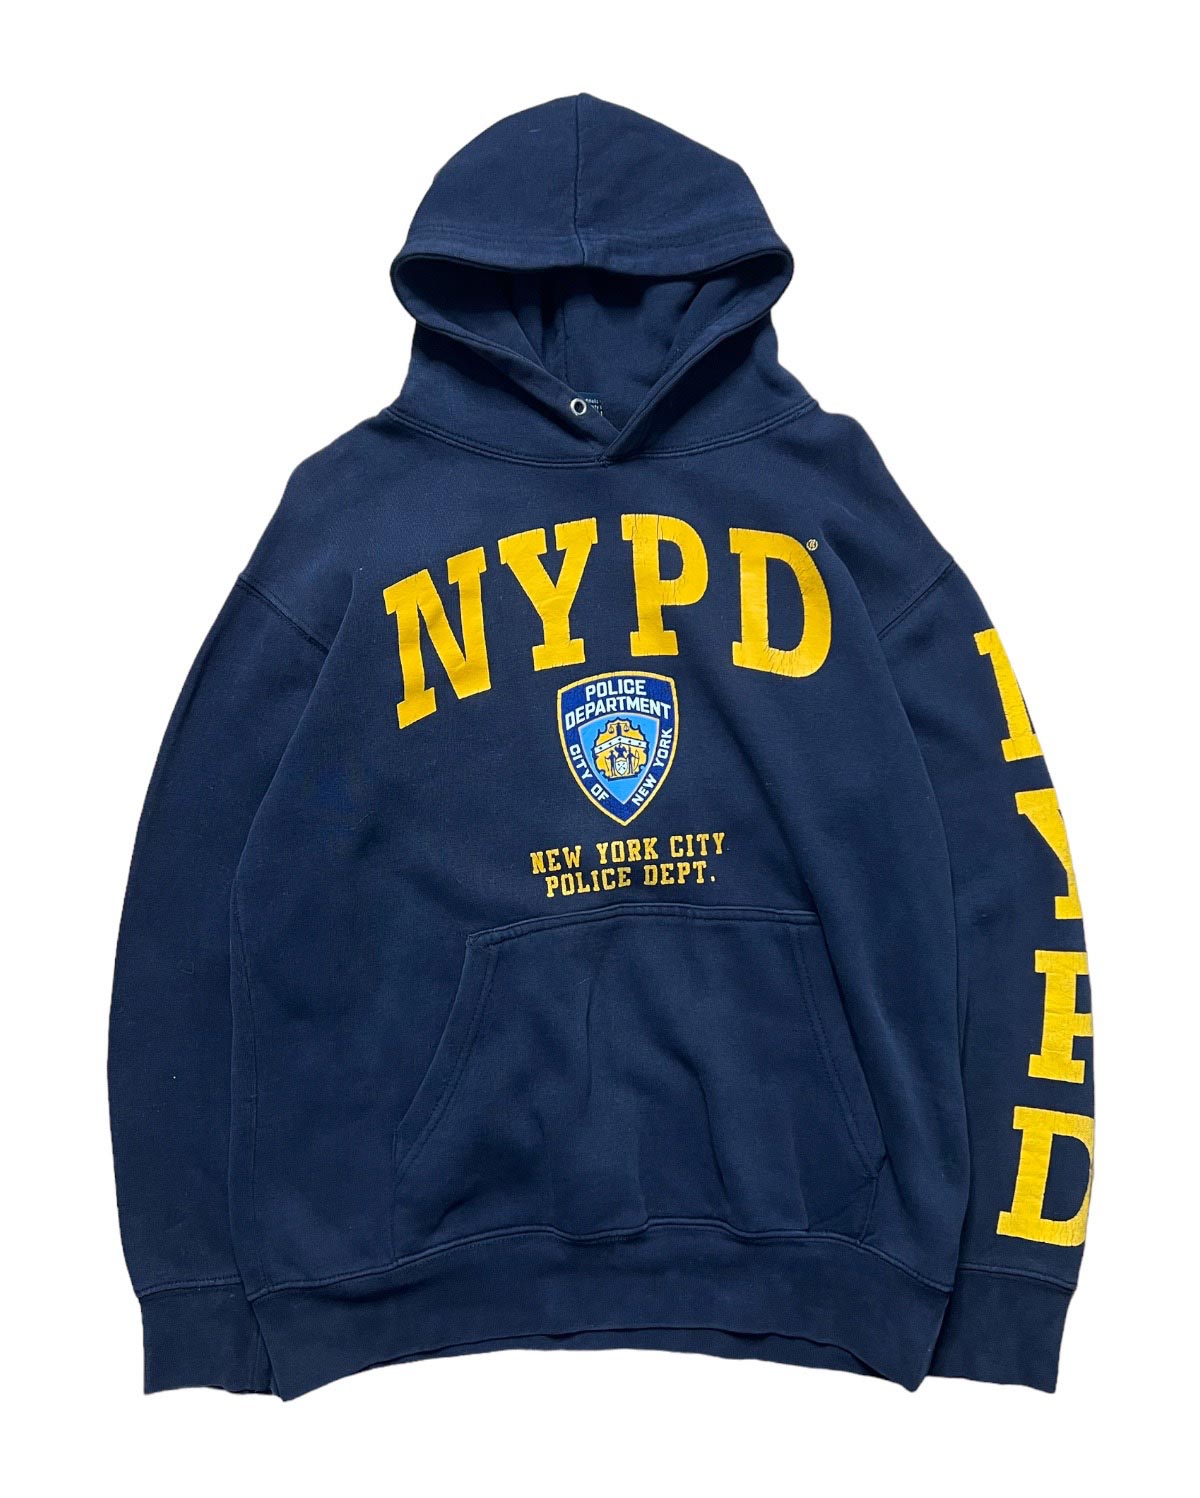 Vintage NYPD hoodie